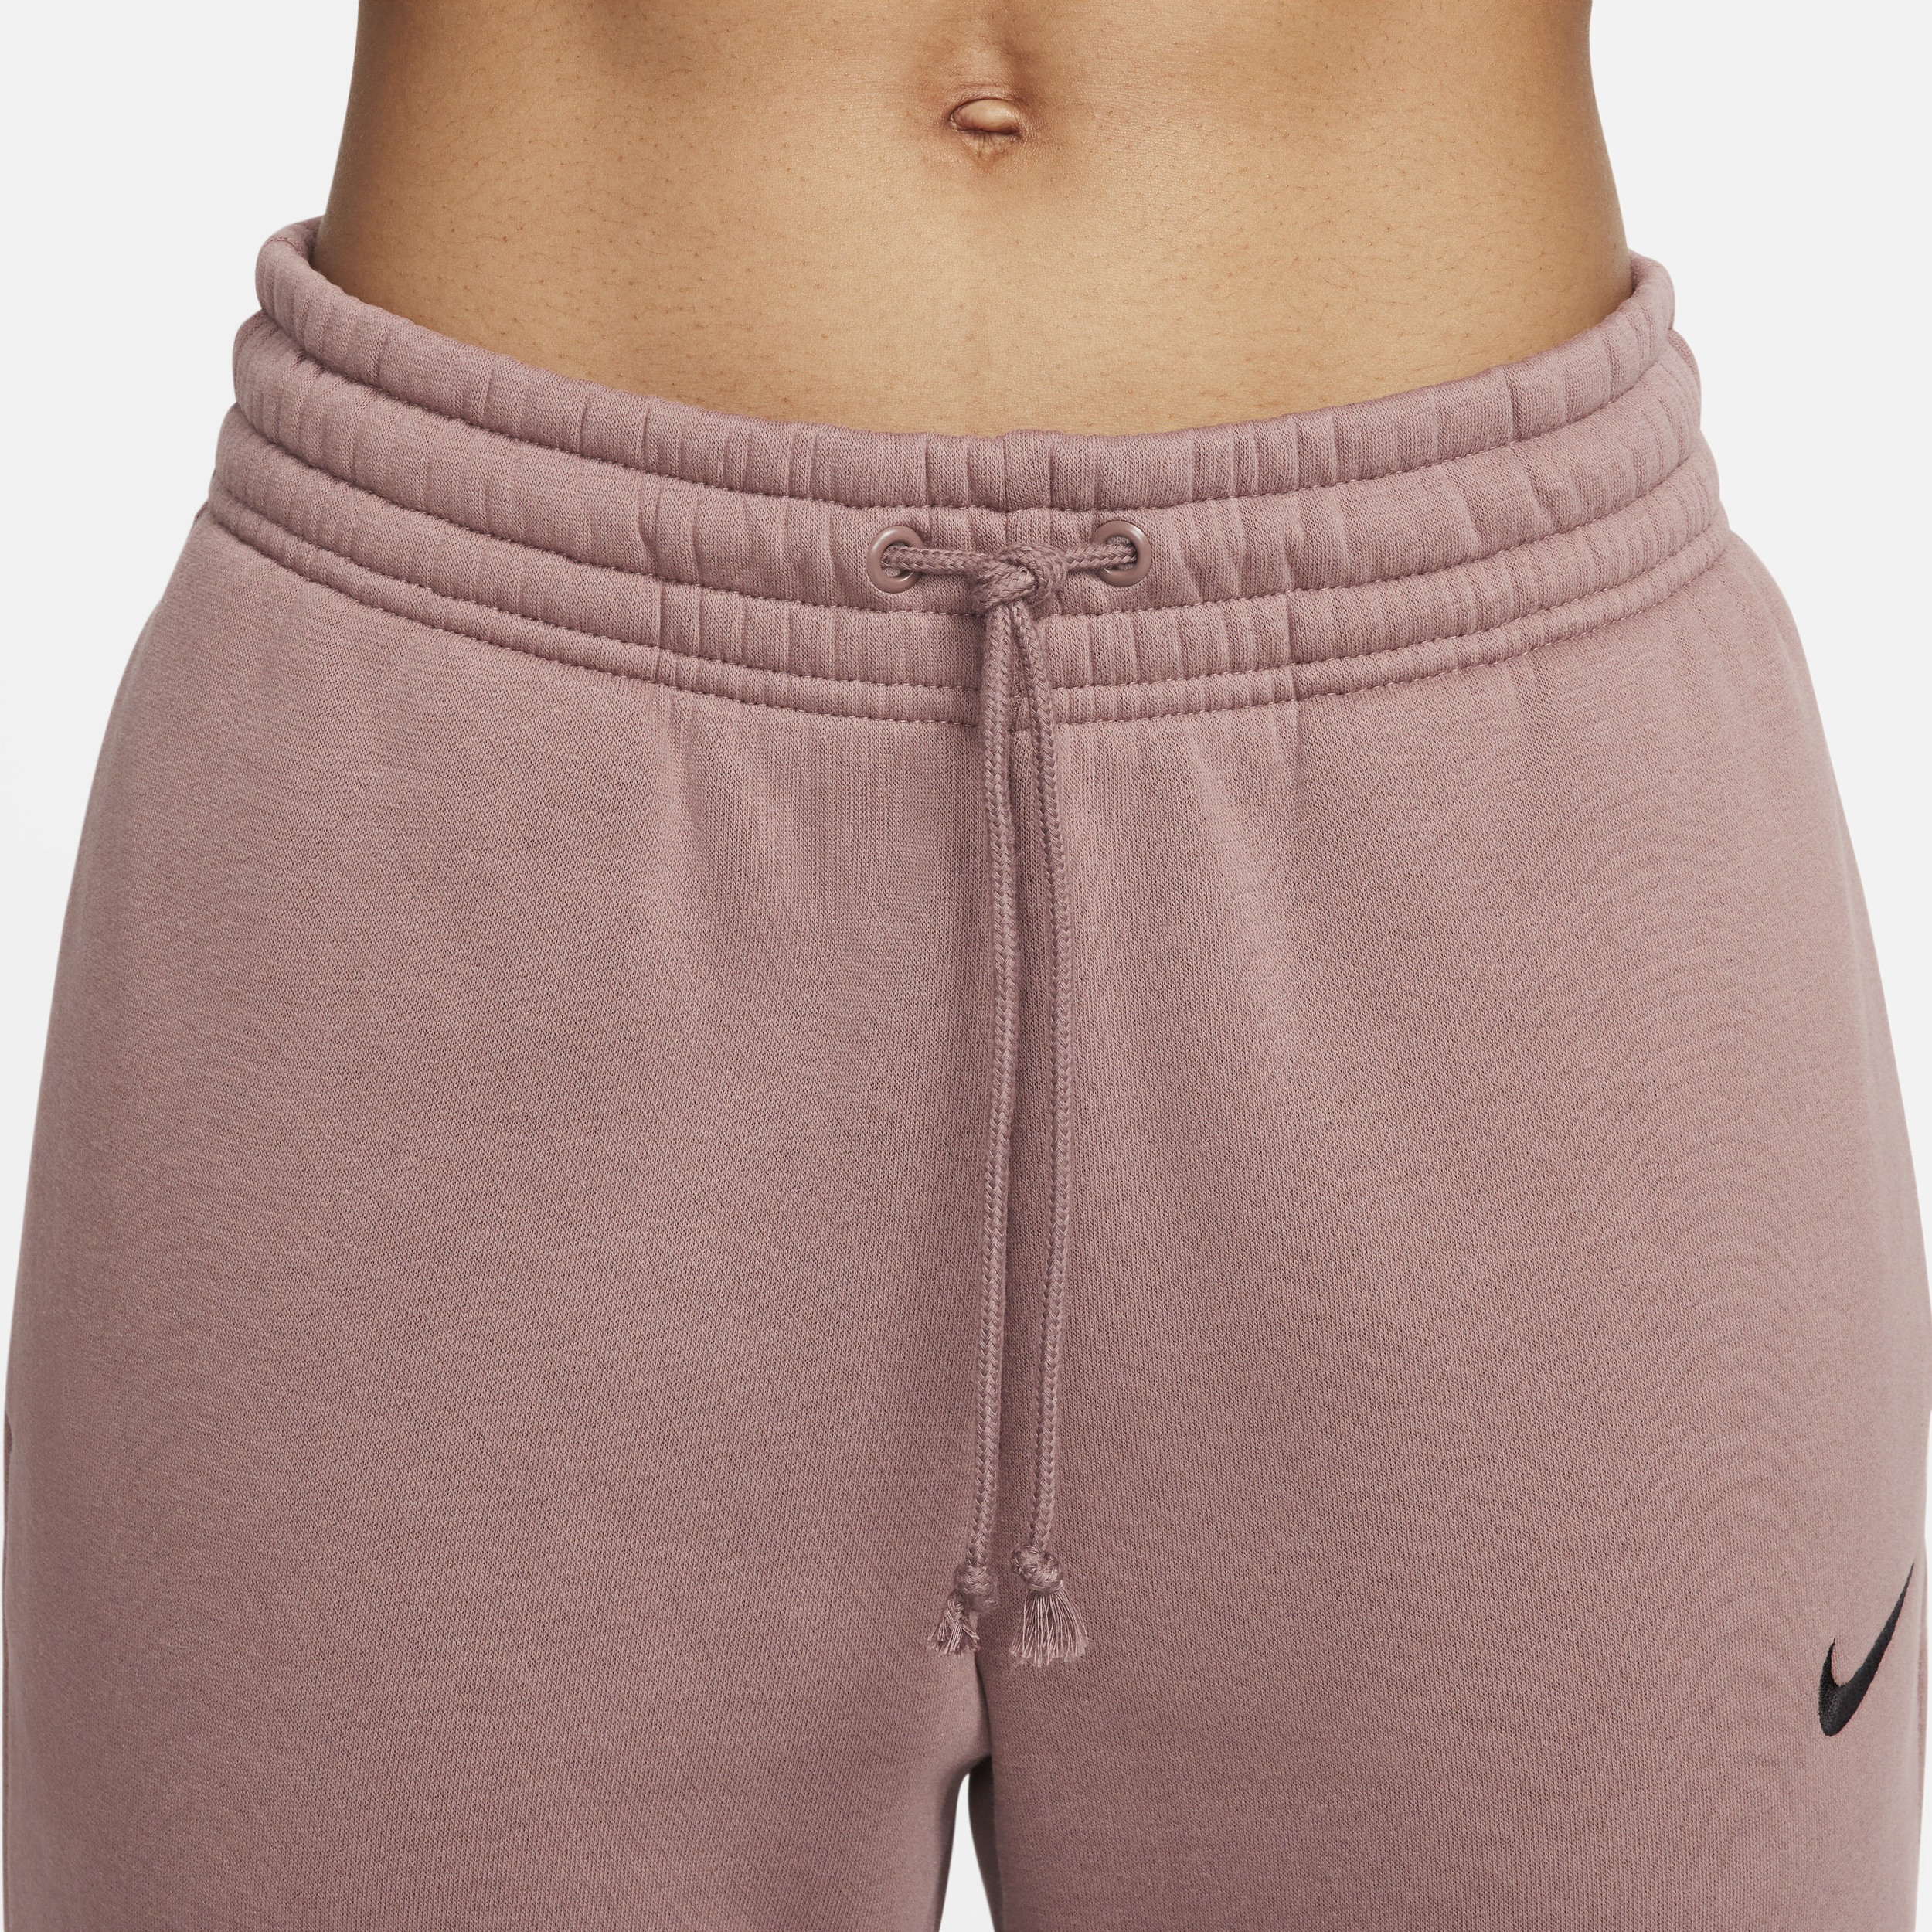 Nike Sportswear Phoenix Fleece joggingbroek met halfhoge taille voor dames Paars